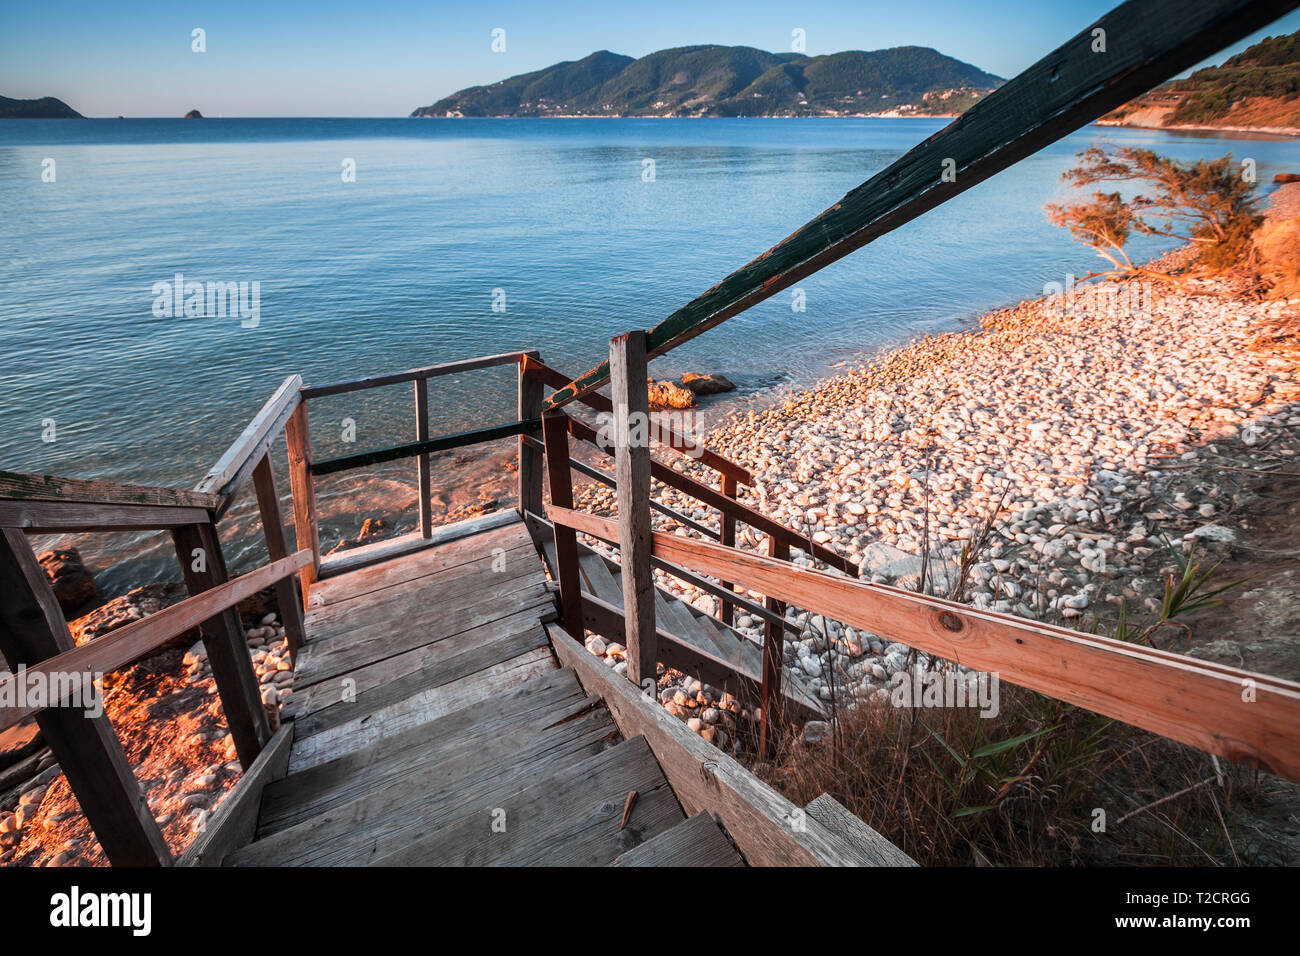 Escaliers en bois pour descendre à la plage. Côte de l'île de Zakynthos, Grèce Banque D'Images